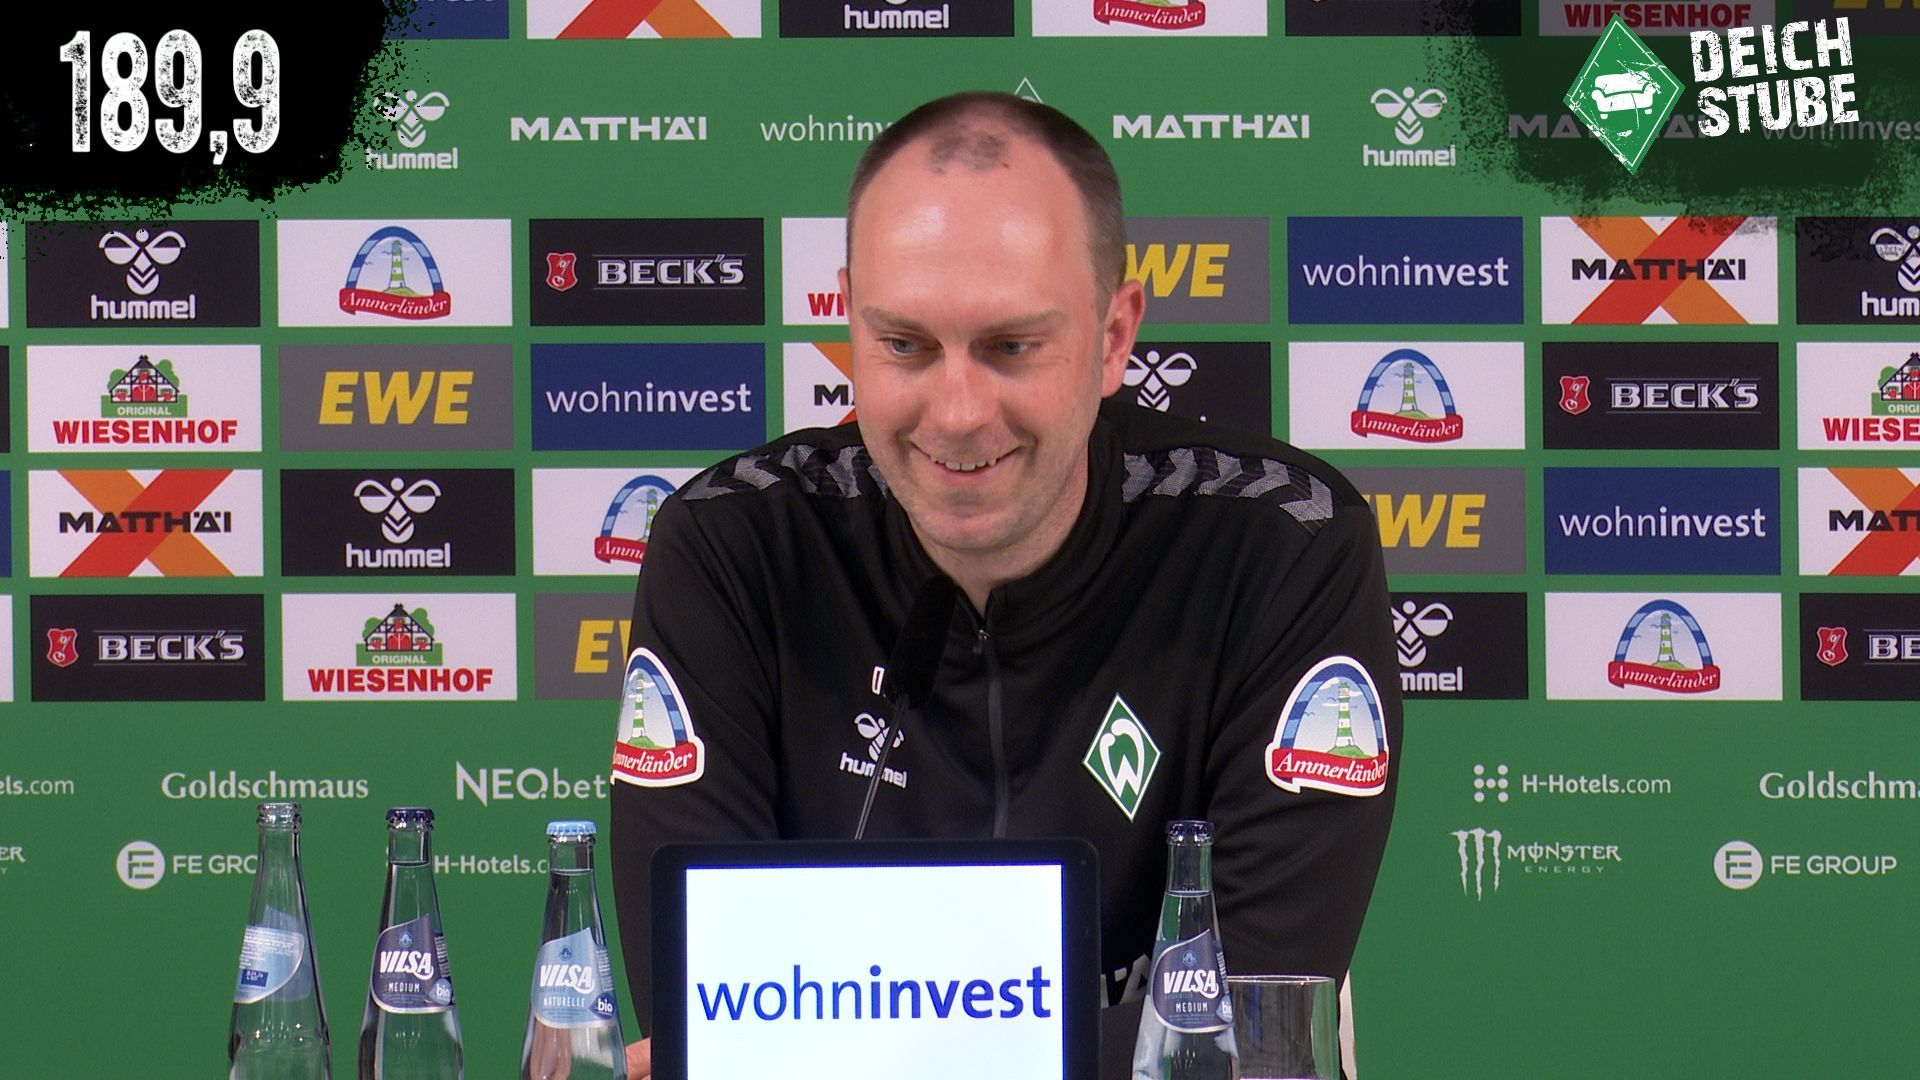 Vor Werder Bremen gegen Borussia Mönchengladbach: Die Highlights der Pressekonferenz in 189,9 Sekunden!